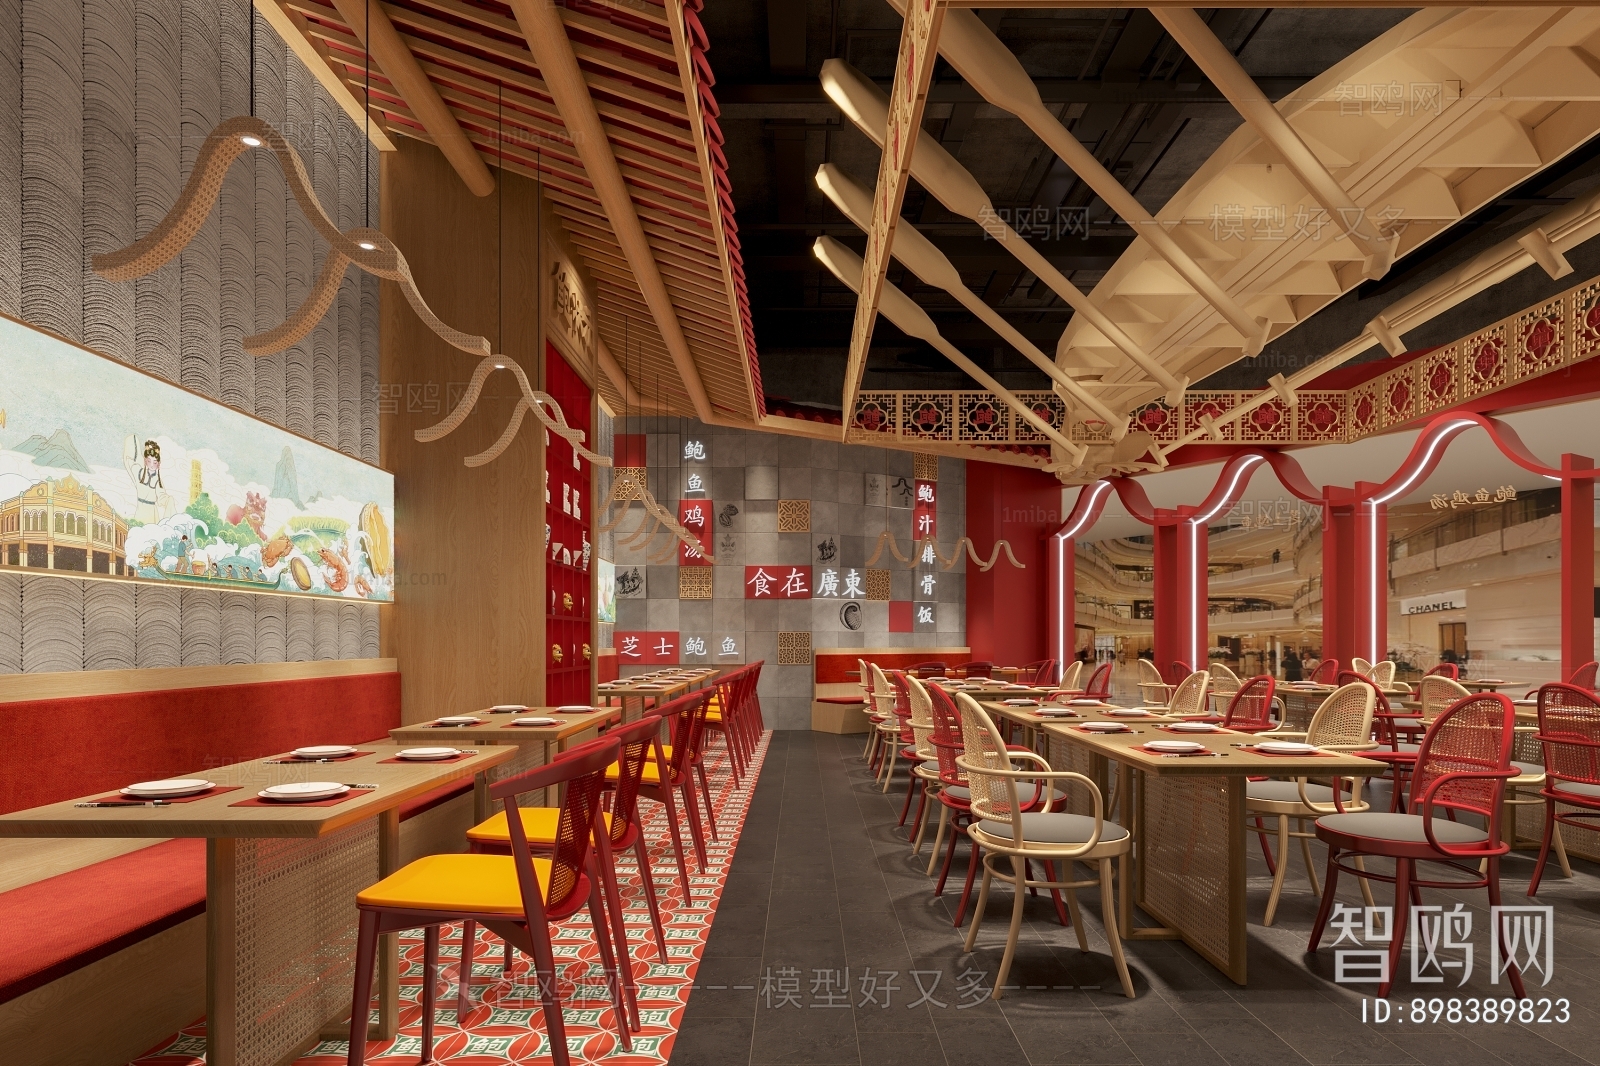 多场景-新中式中餐厅+门头